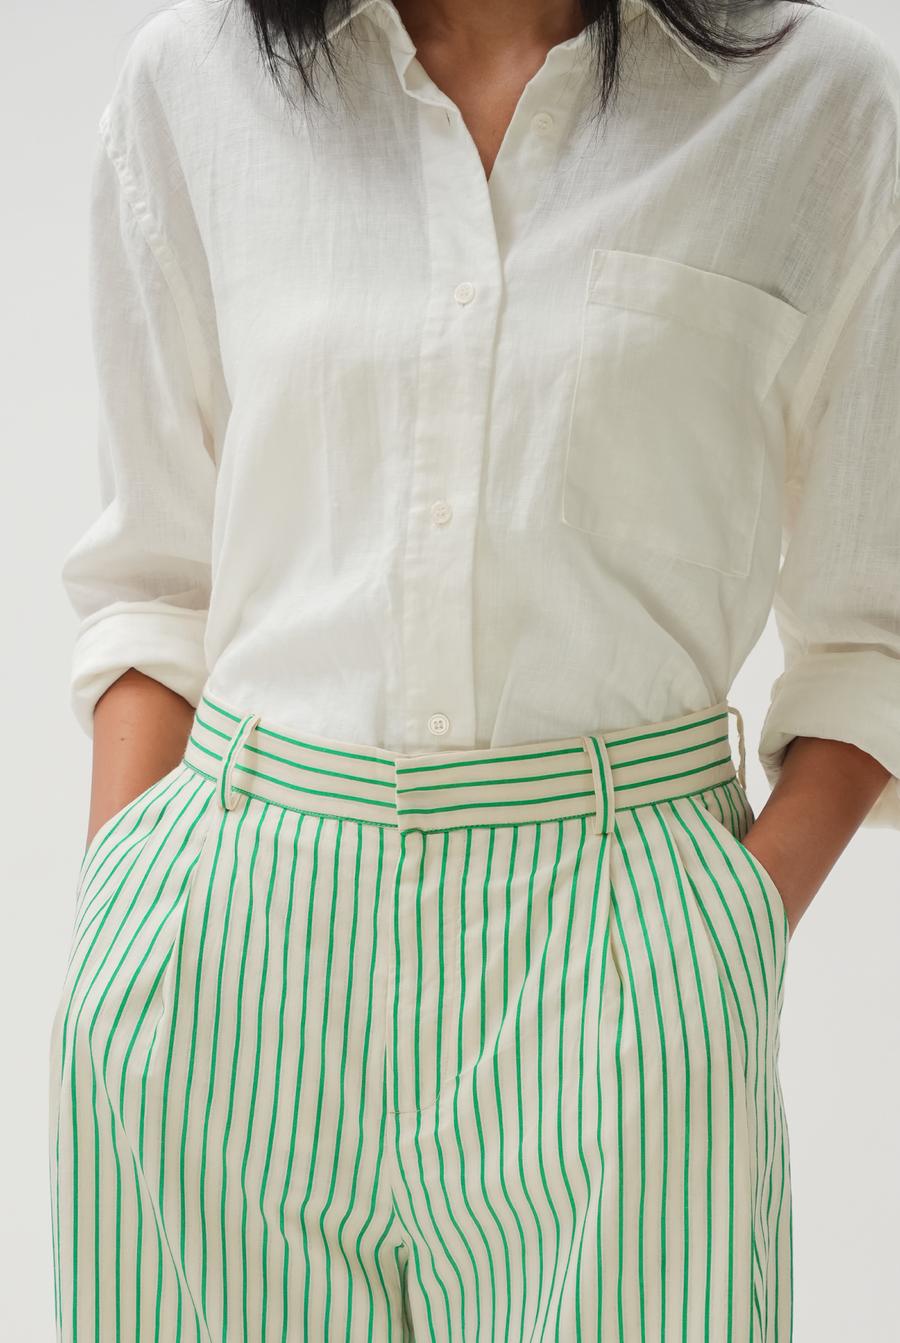 Off Duty Trousers in Green Stripe